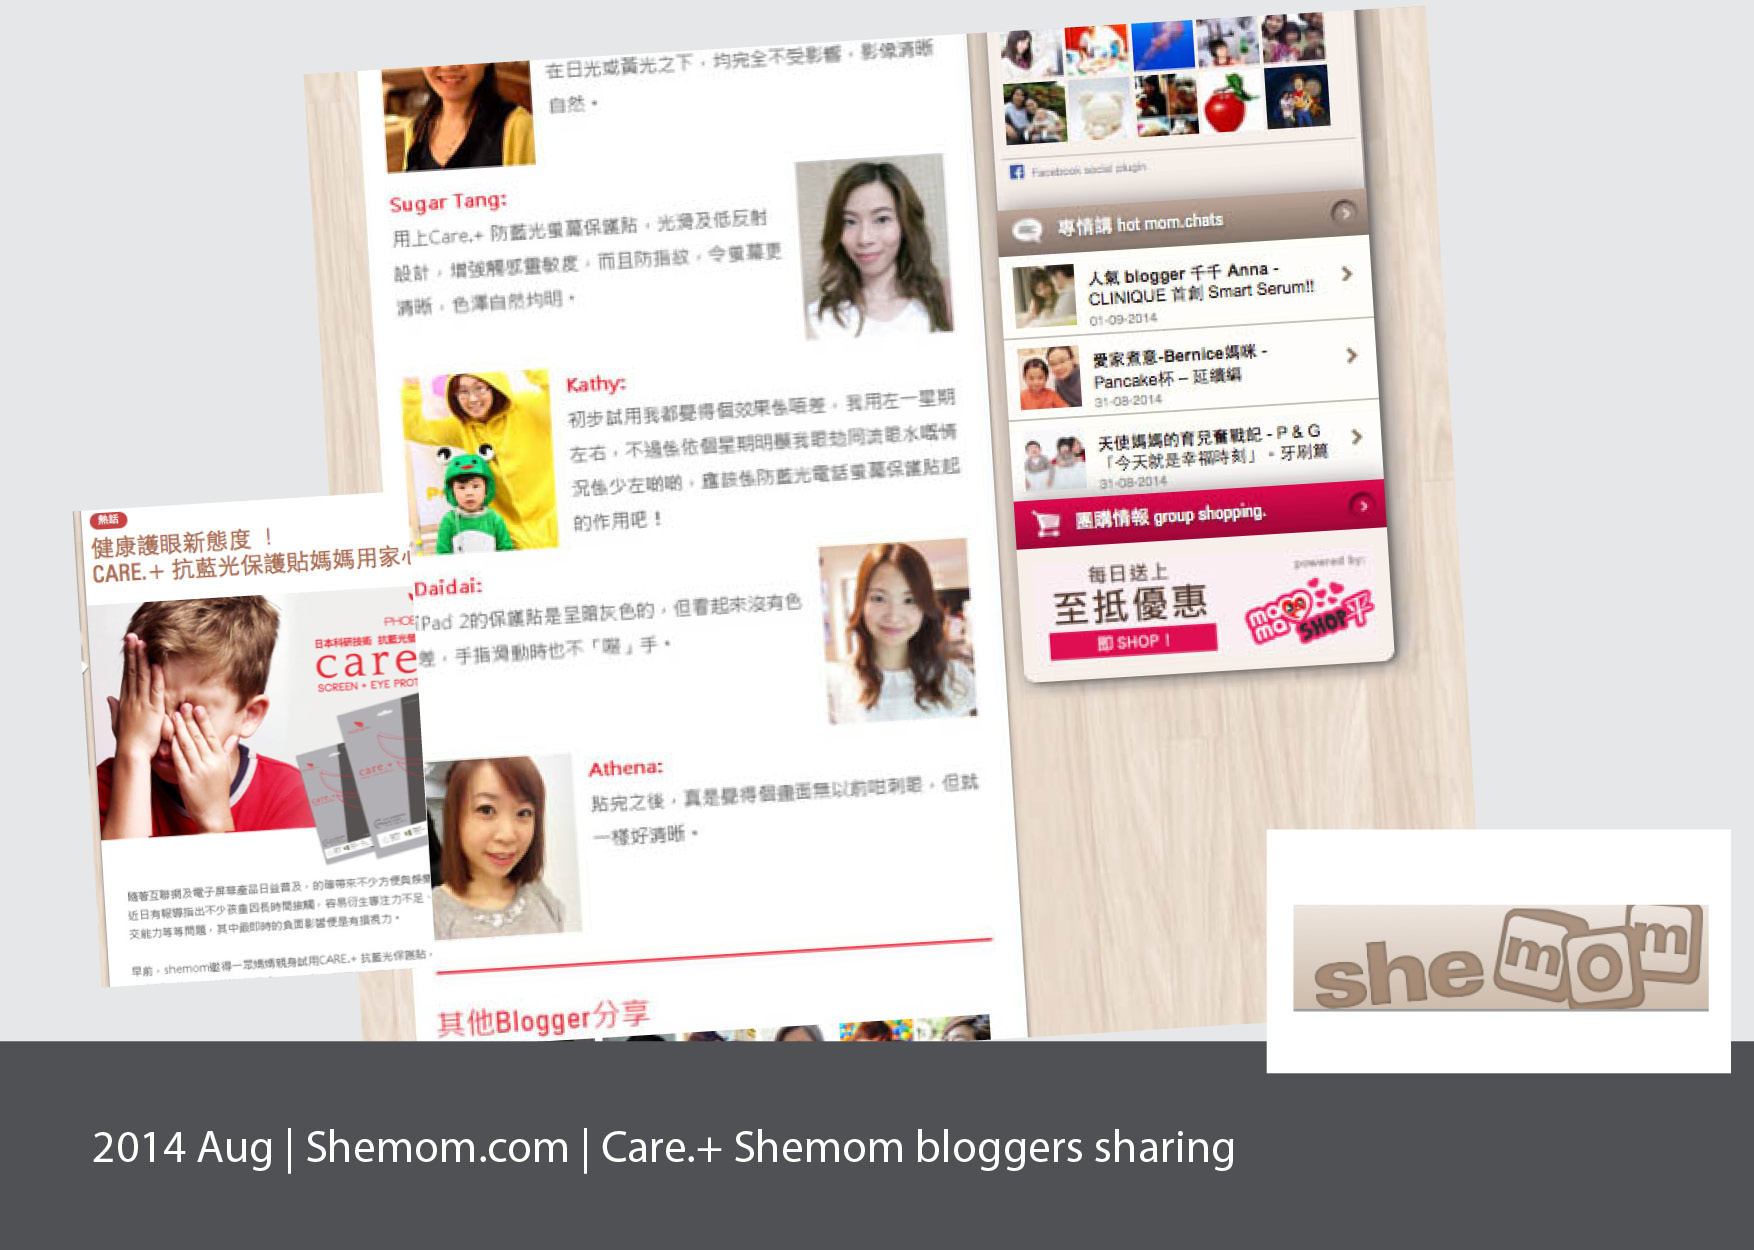 Shemom.com, Care.+ blogger sharing